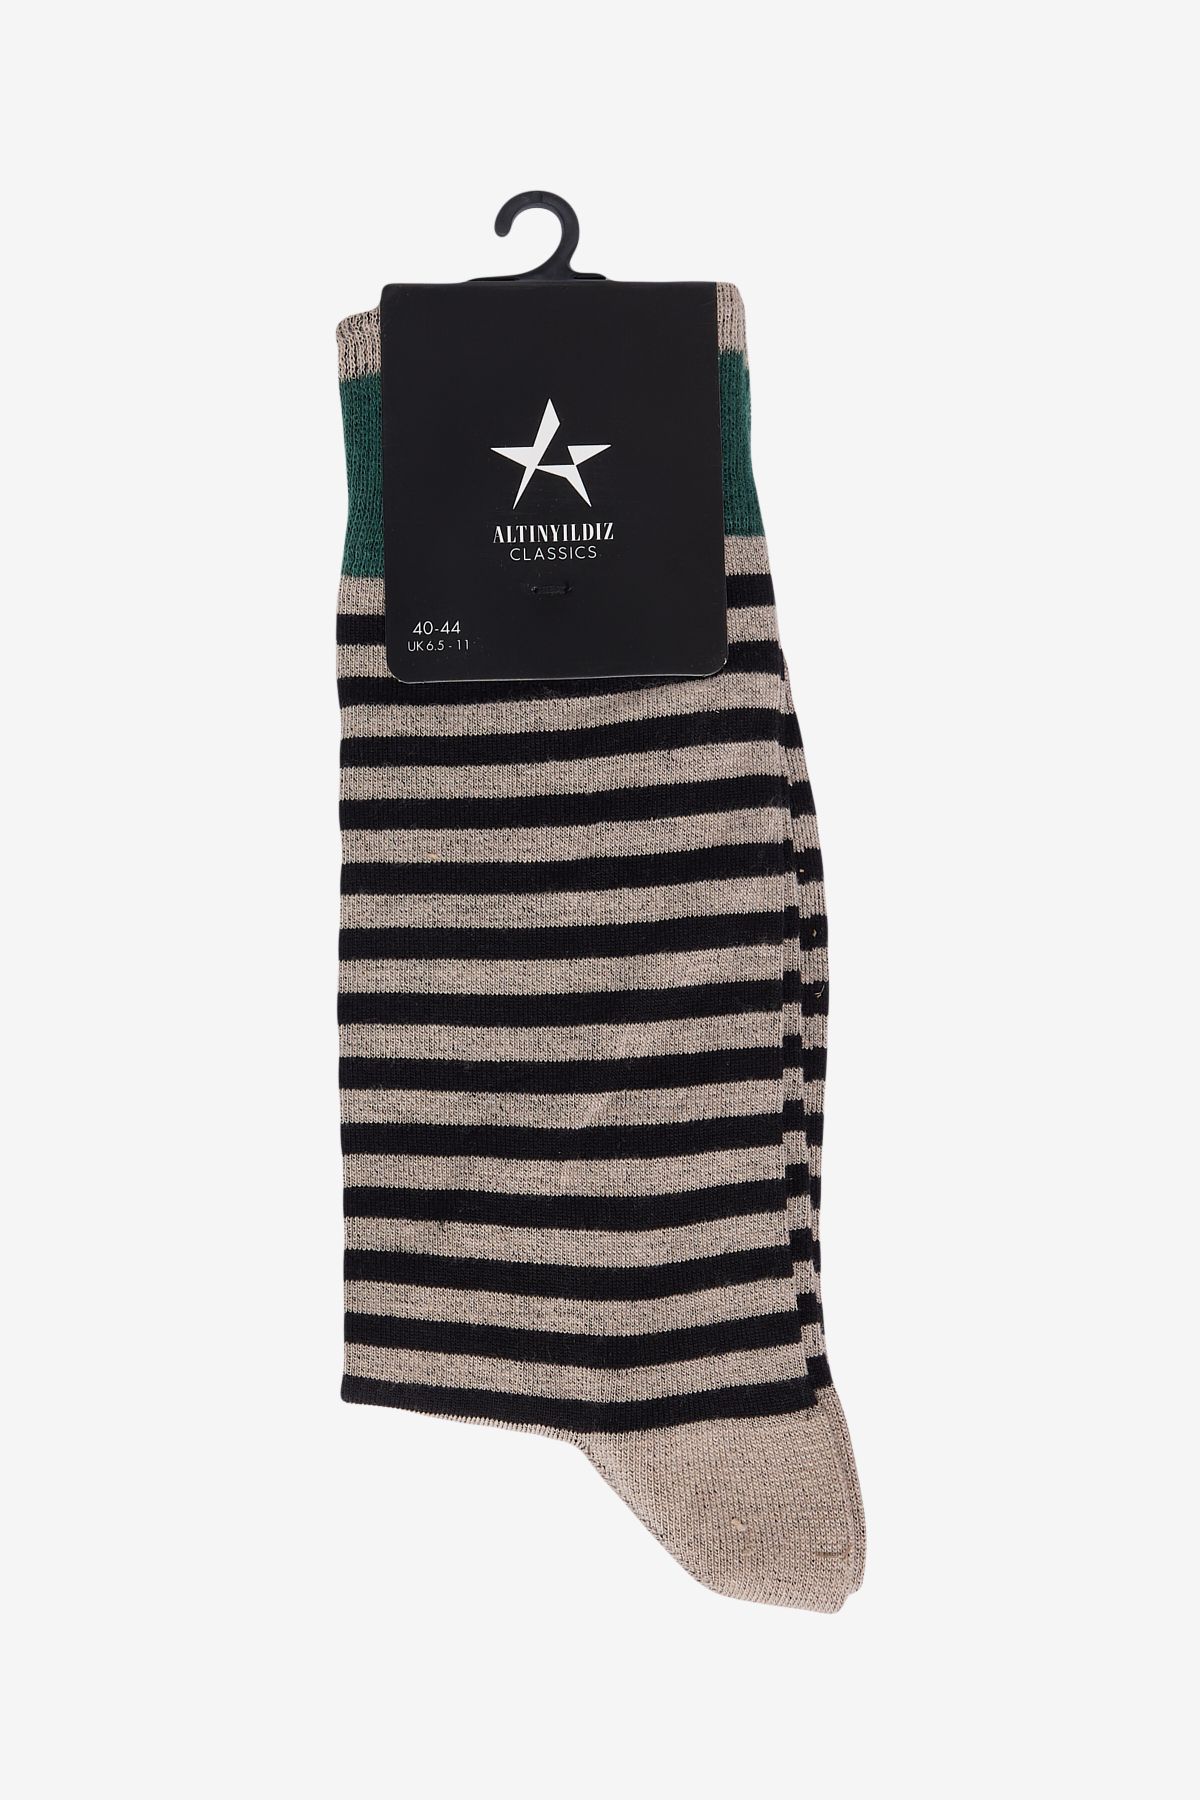 Altınyıldız Classics Erkek Kahve-Siyah Desenli Bambulu Soket Çorap